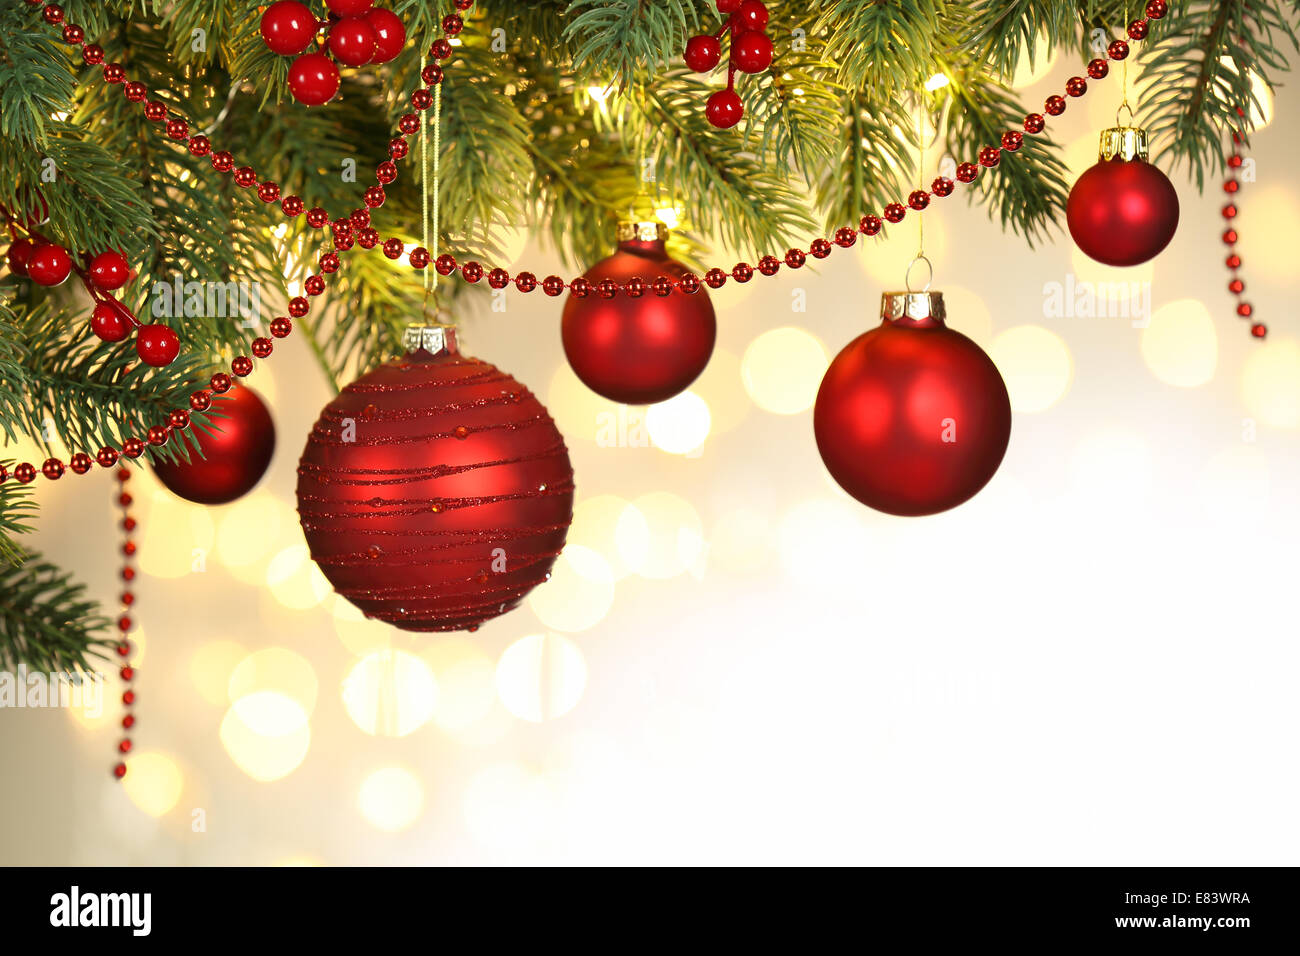 Dettaglio delle decorazioni natalizie Foto Stock